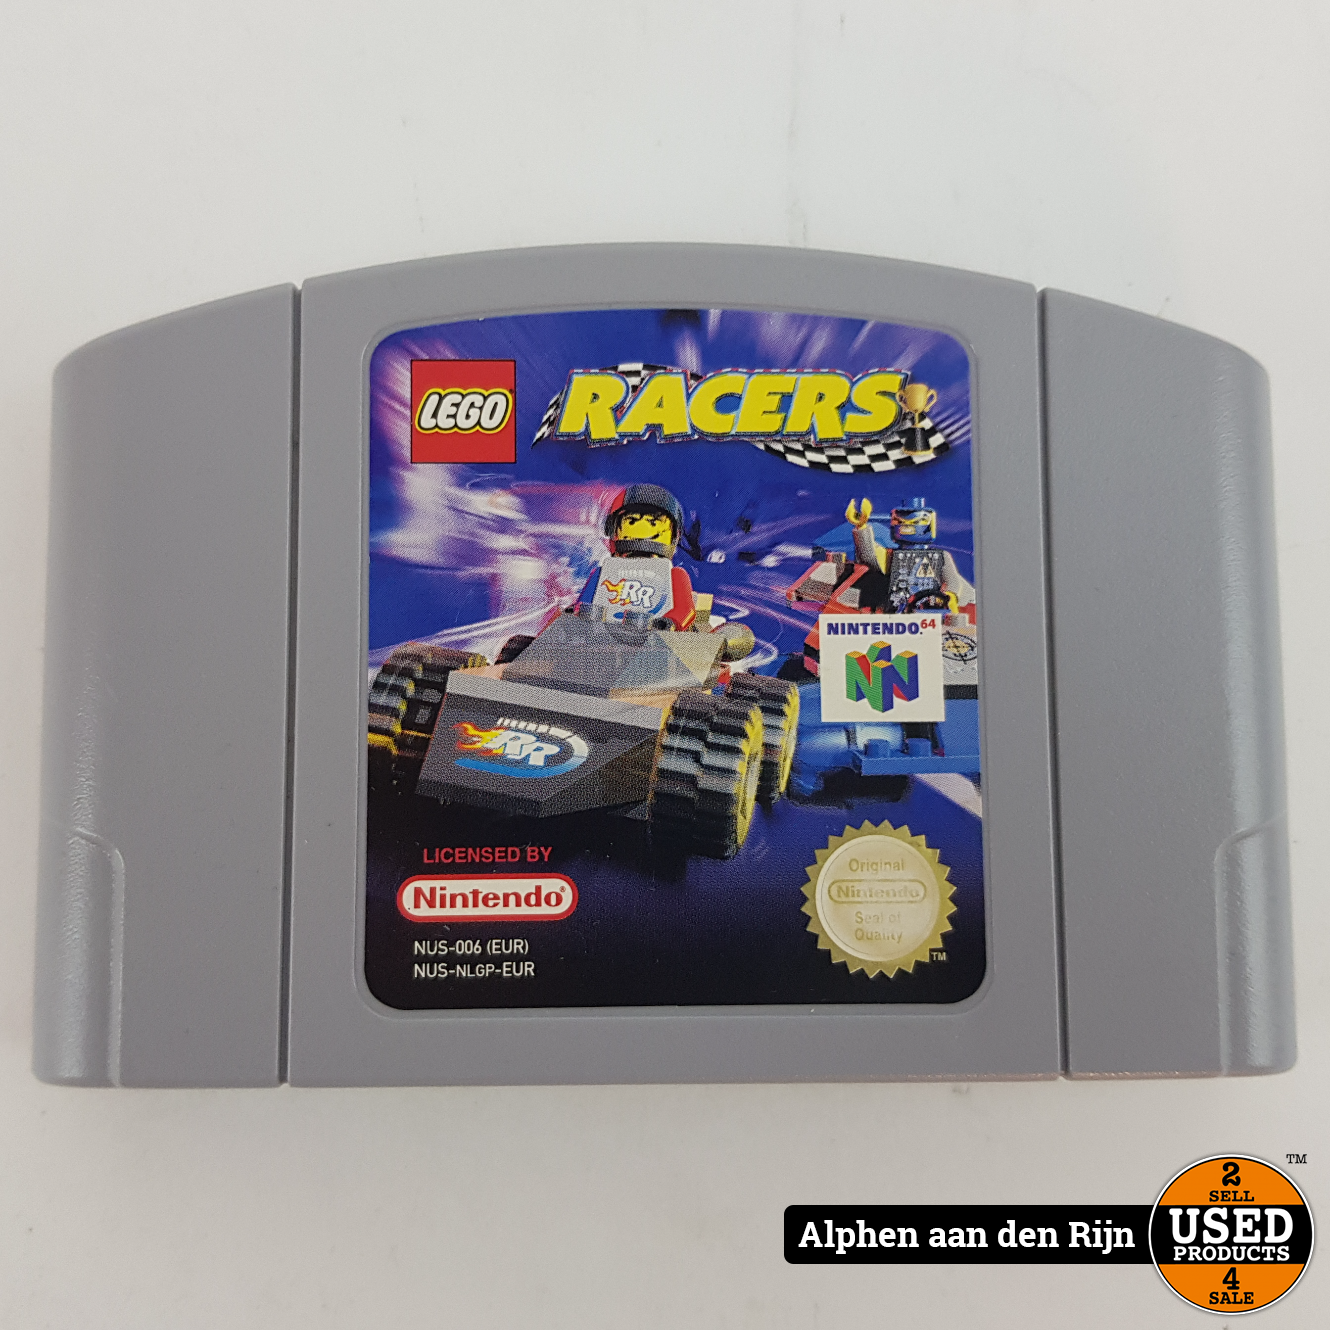 Lego Racers Nintendo 64 - Used Alphen aan den Rijn